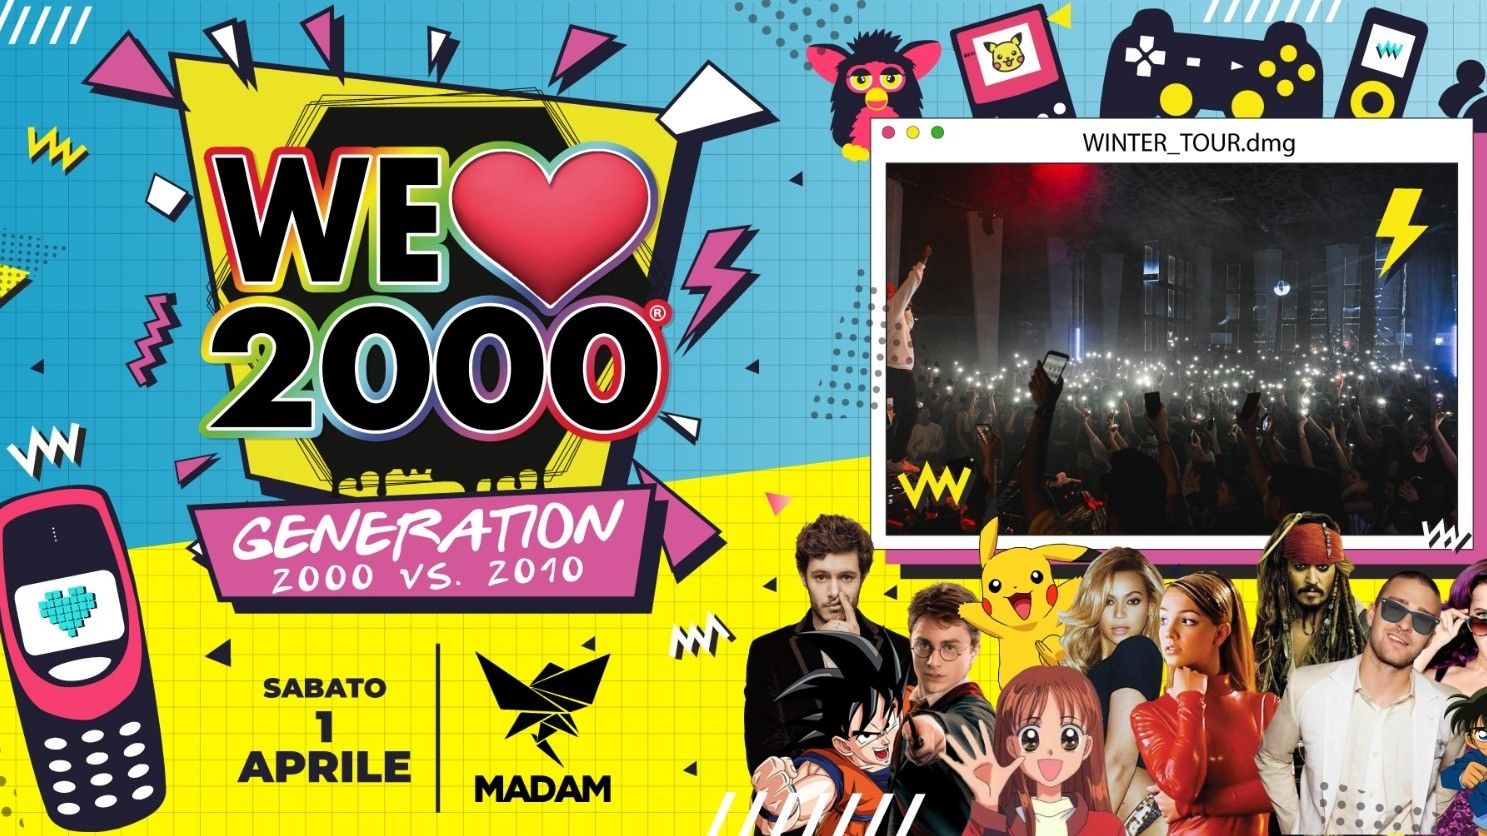 We Love 2000 Generation! La più grande festa 2000 d'Italia!